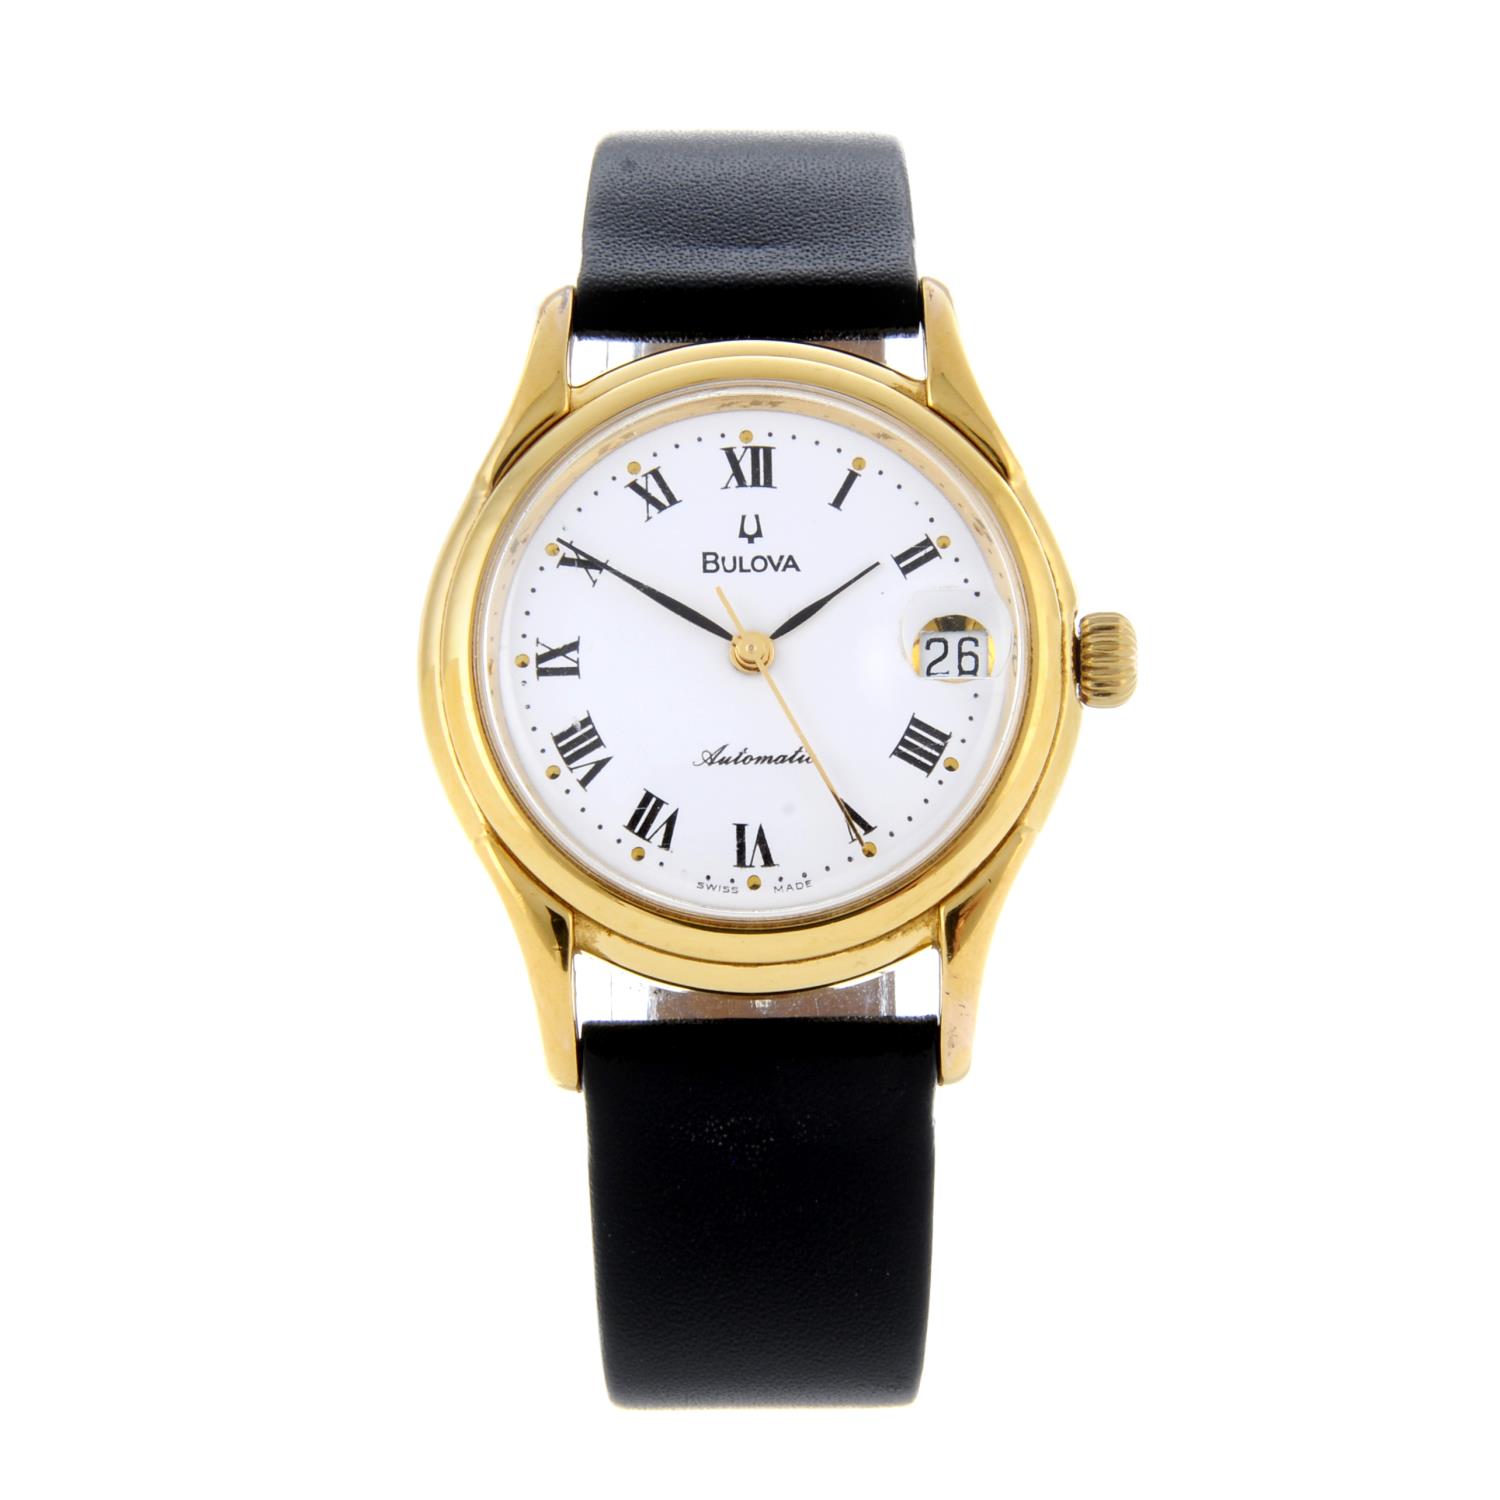 BULOVA - a gentleman's wrist watch.